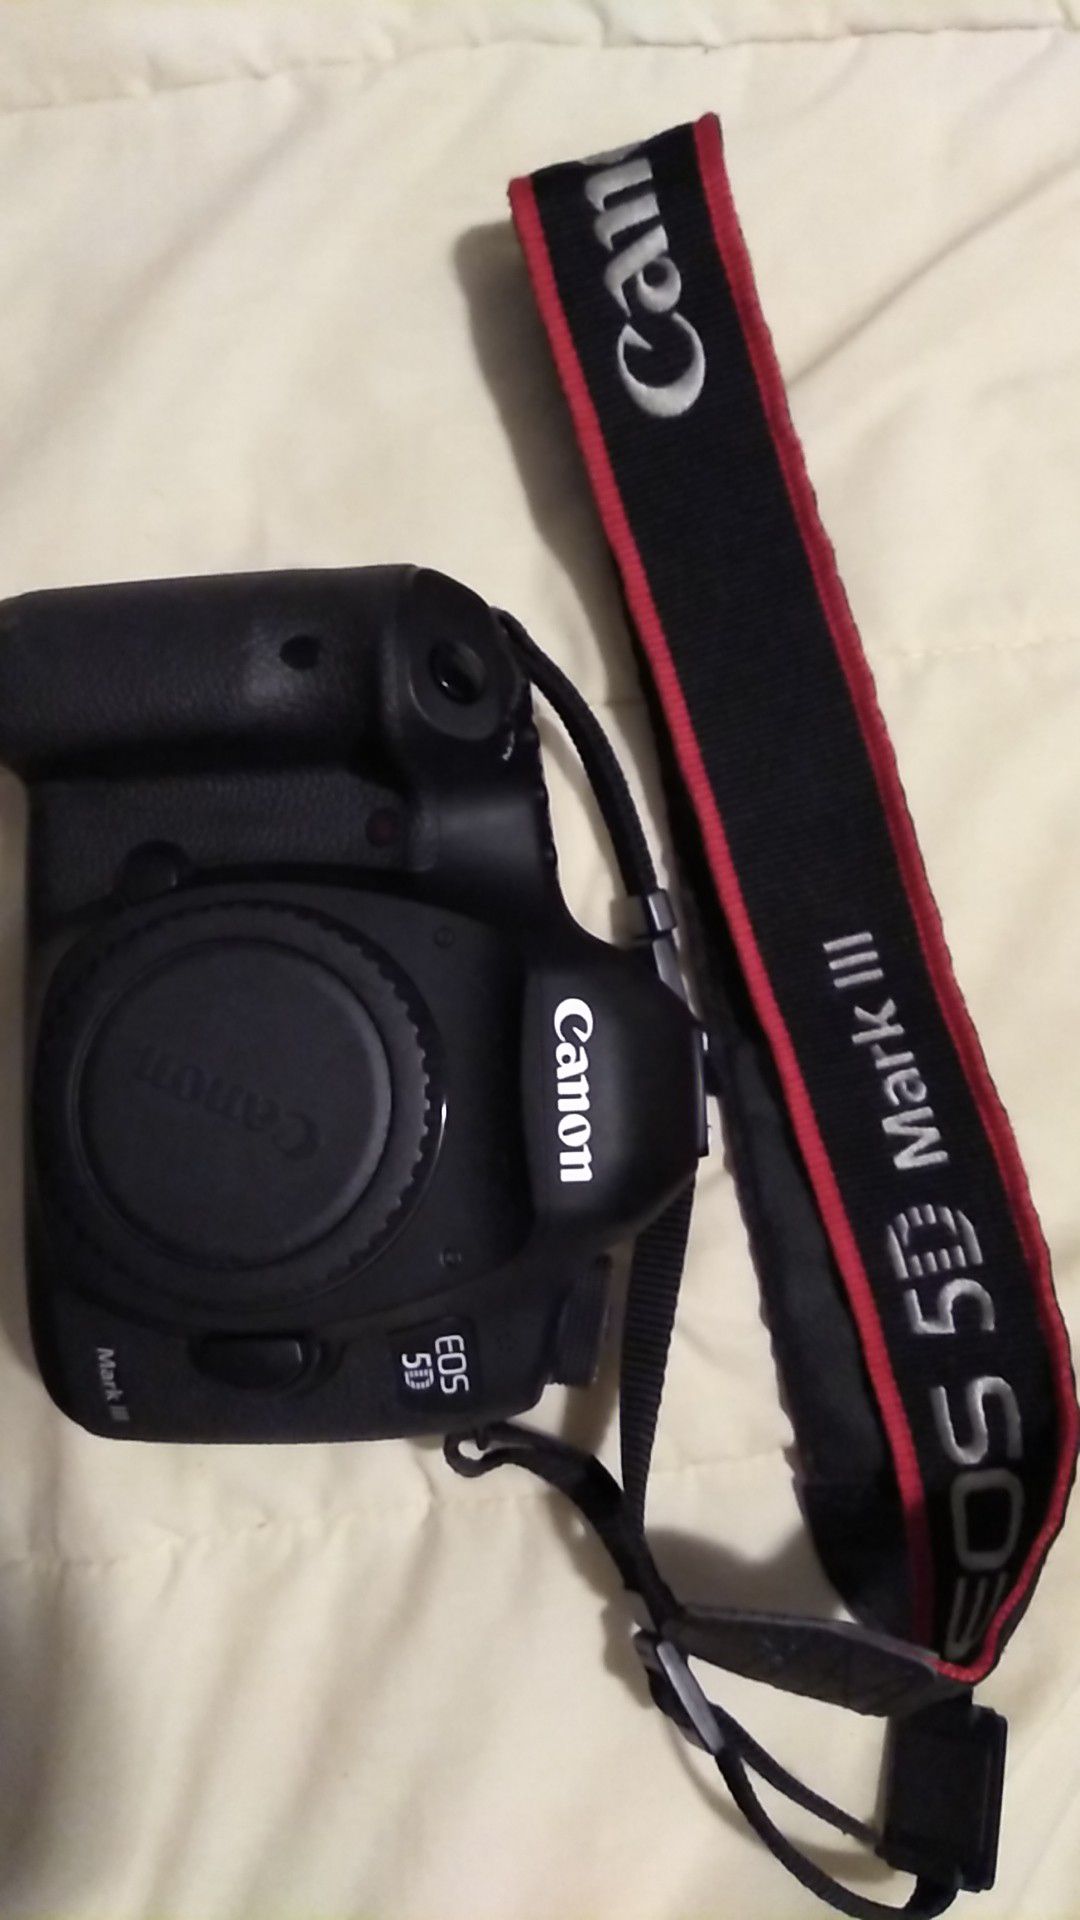 Canon EOS 5D Camera